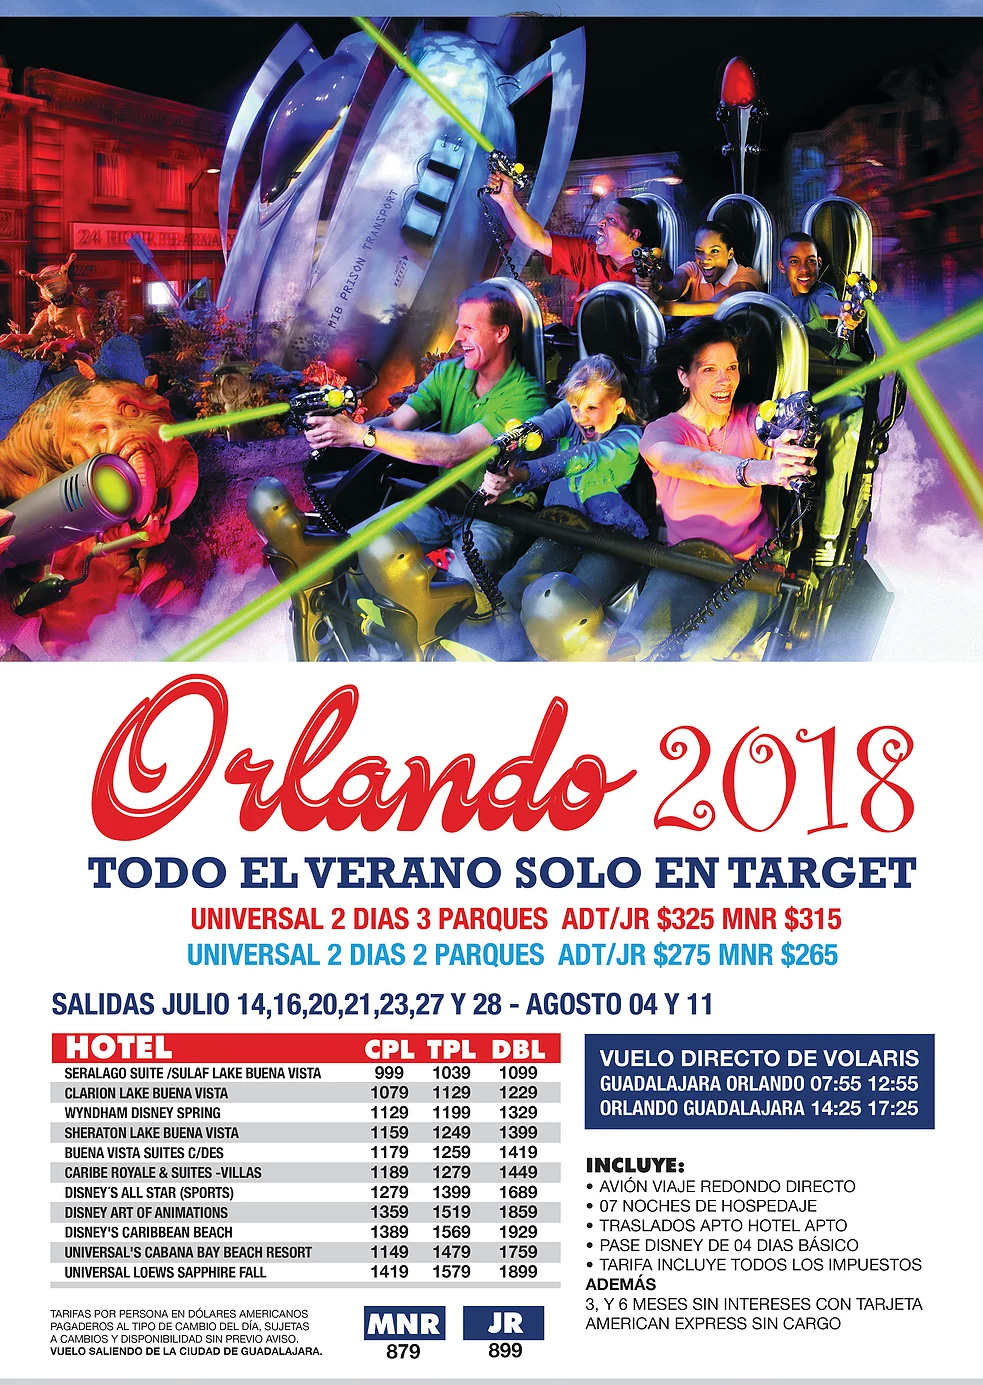 Paquetes a Orlando Todo Incluido desde Guadalajara